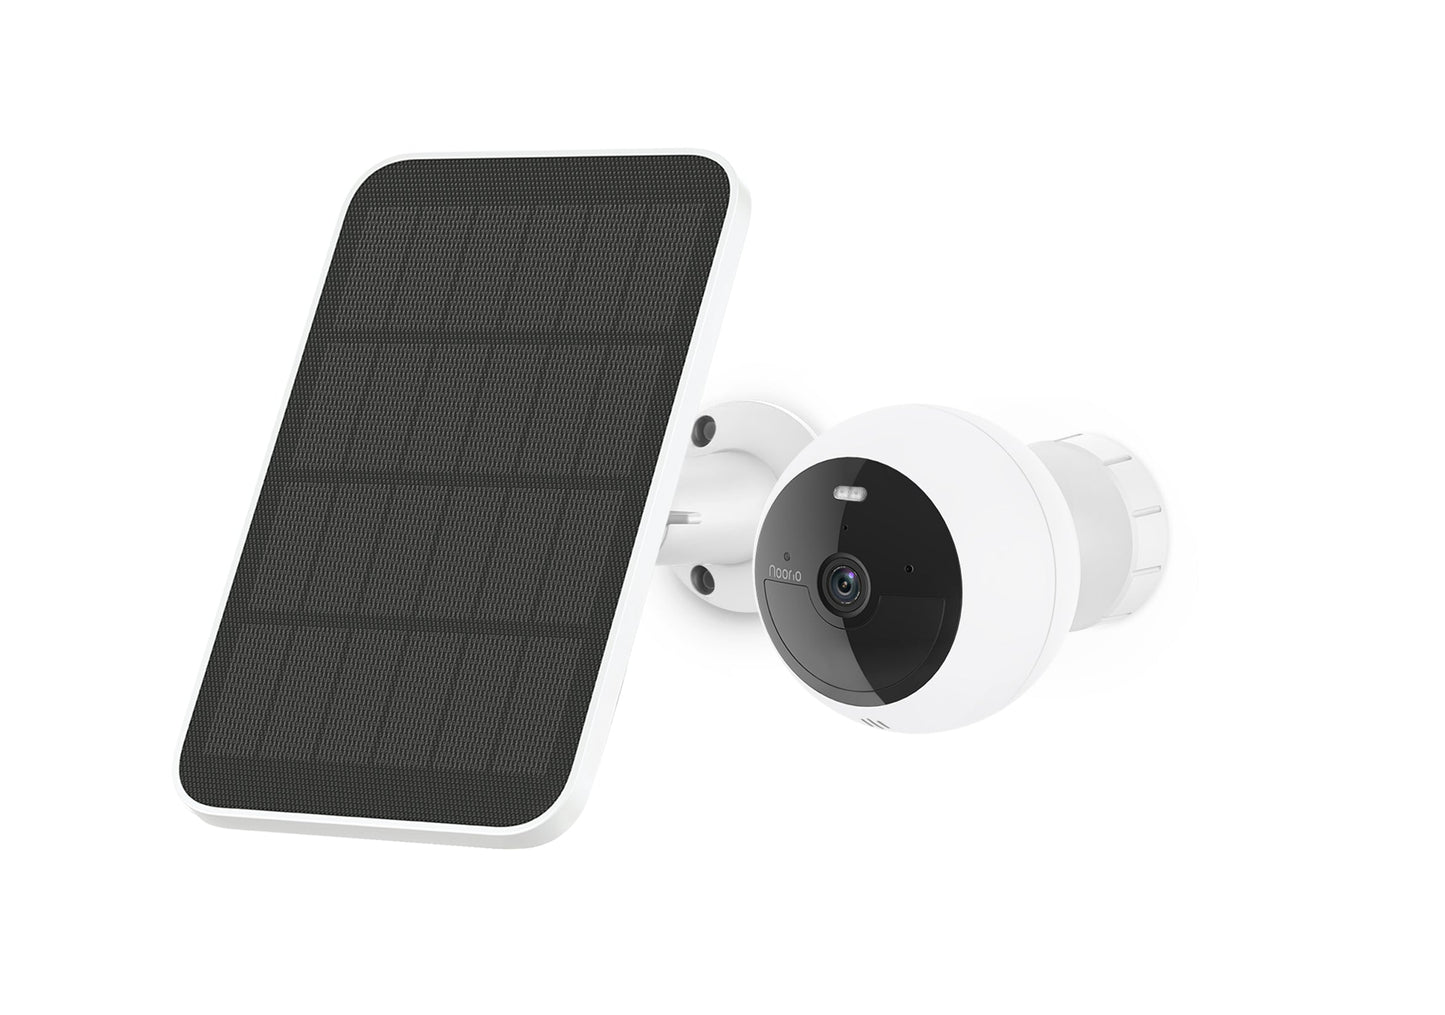 Noorio solar security camera system